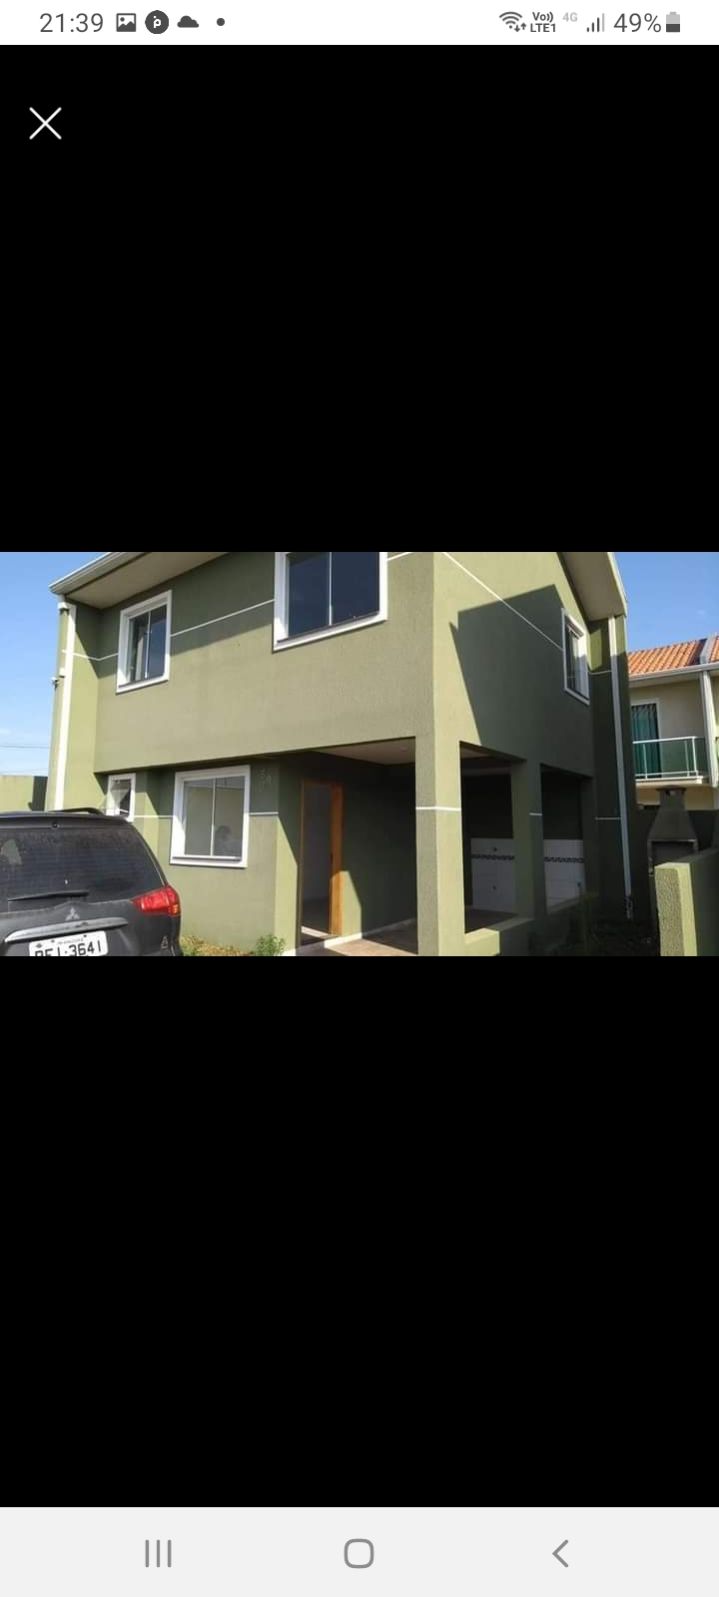 Sobrado com 3 Dormitórios à venda, 76 m² por R$ 360.000,00